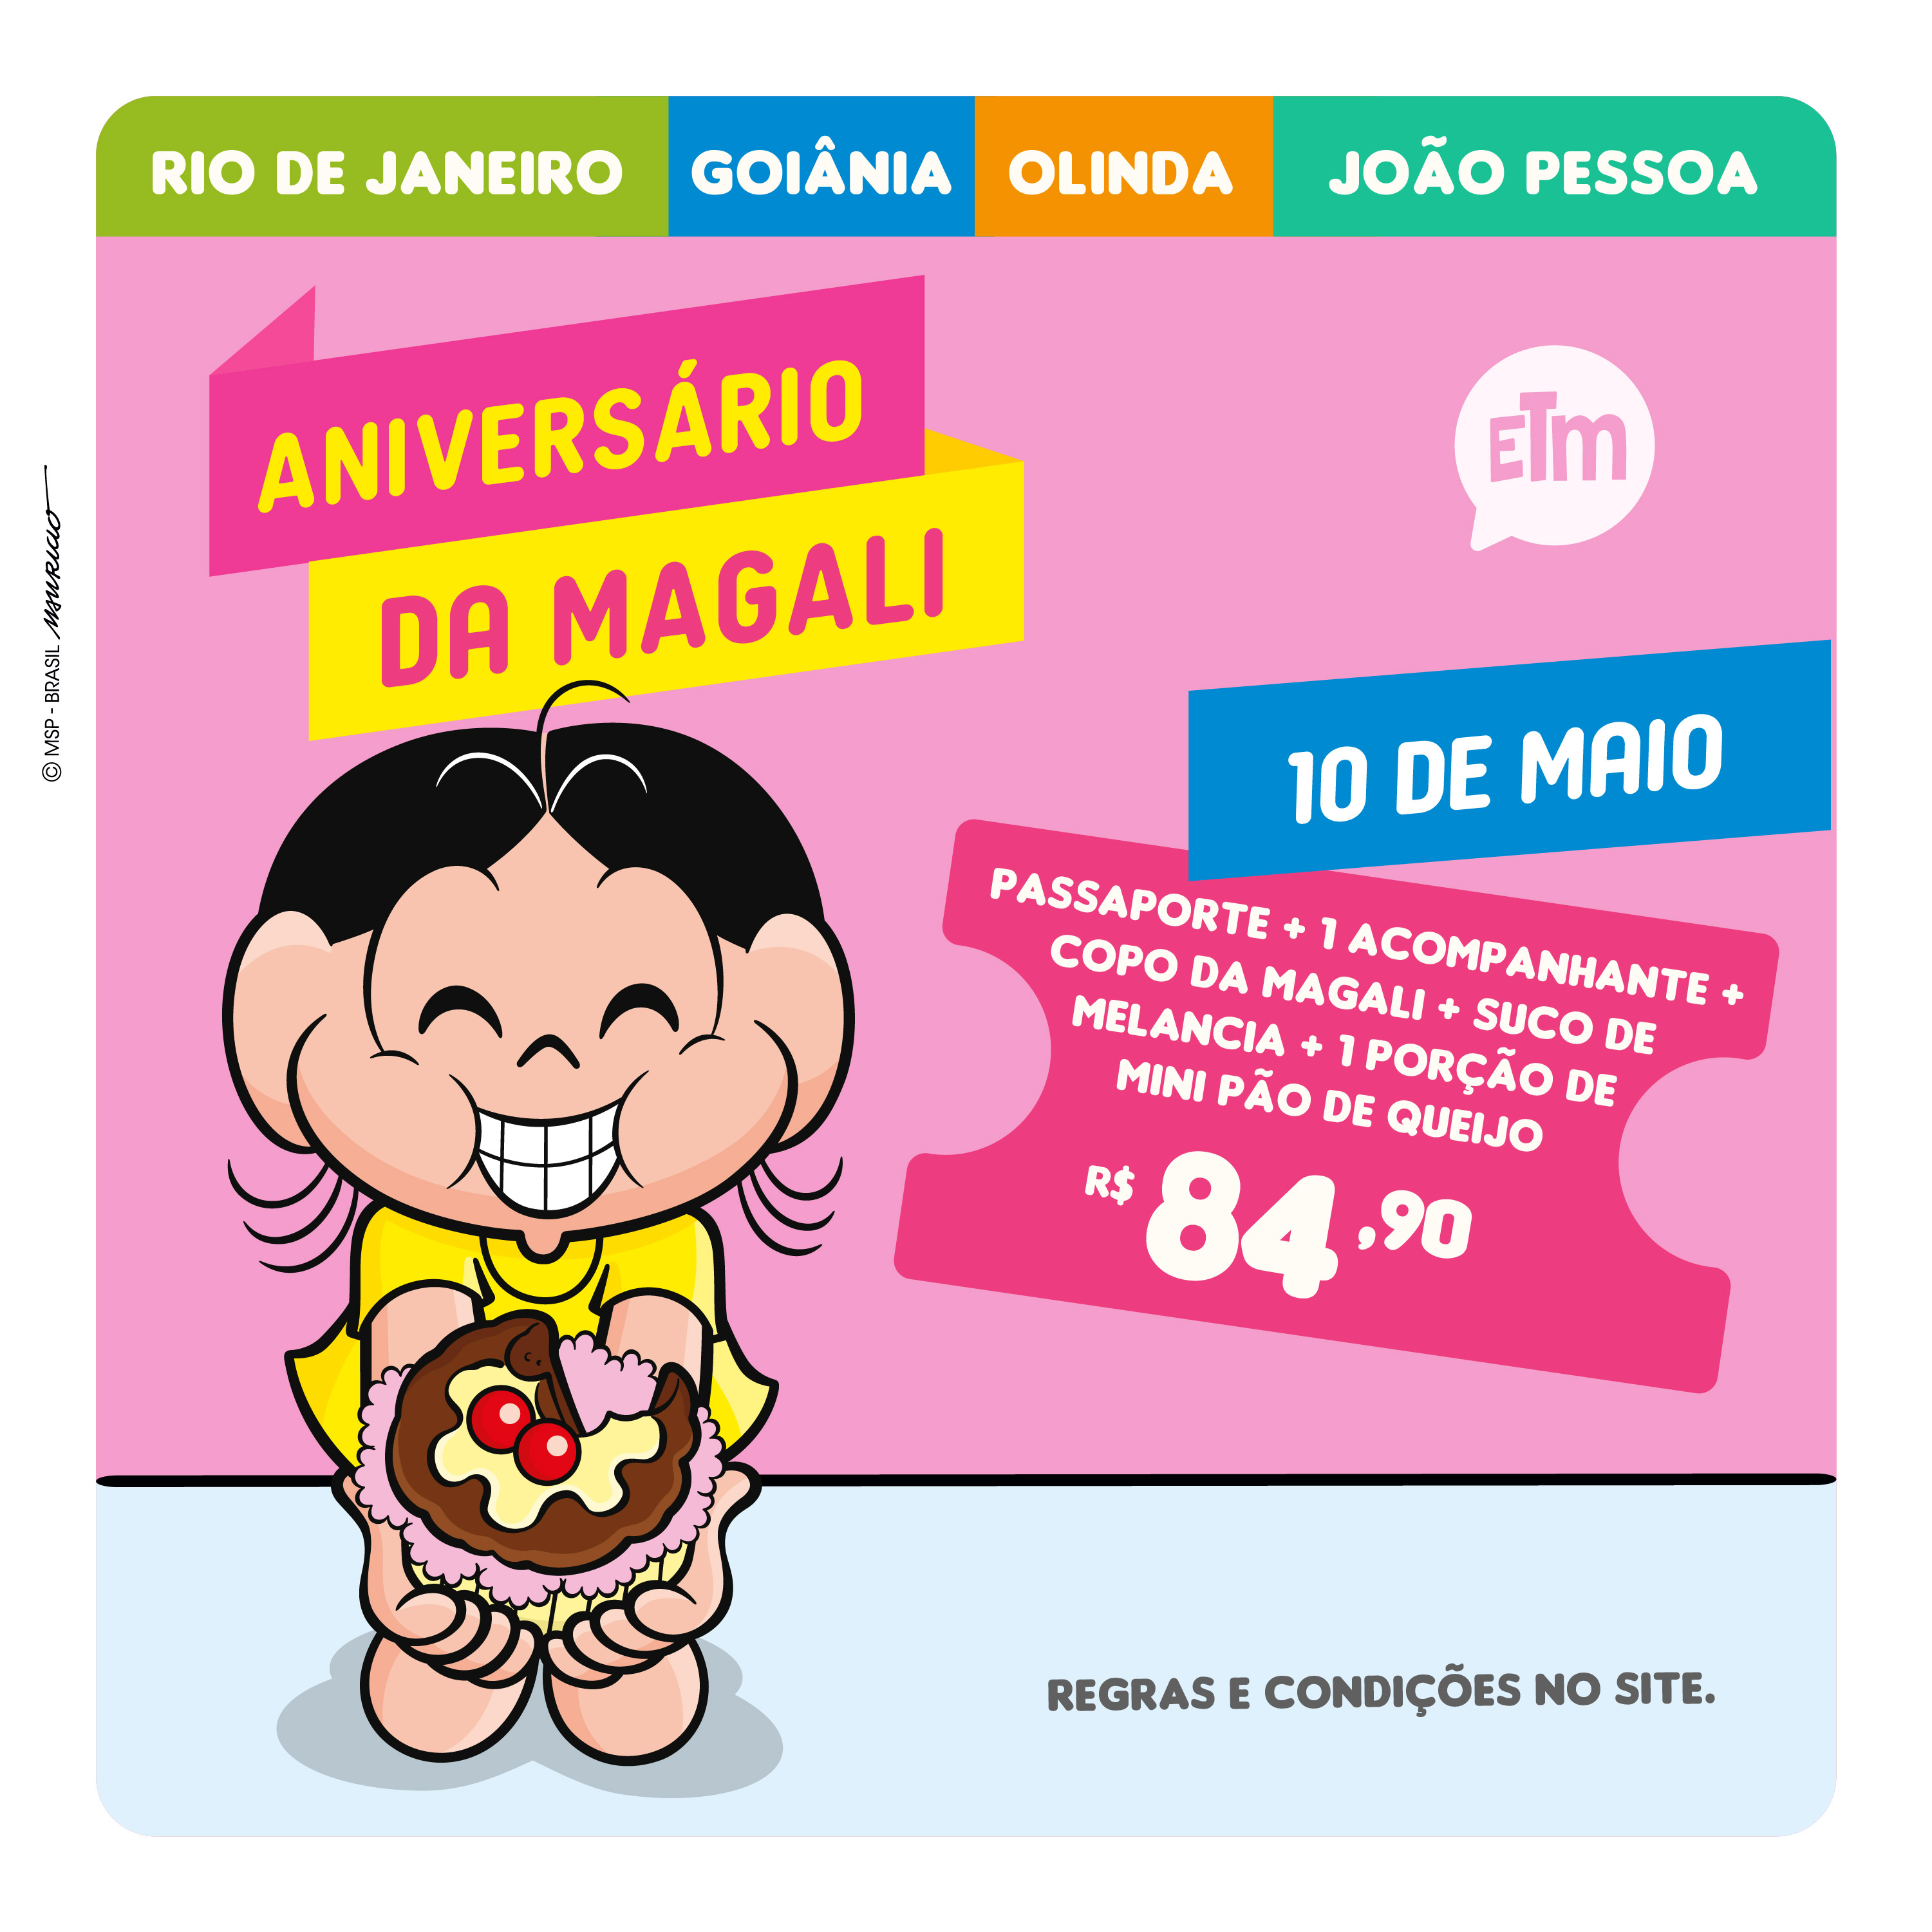 ANIVERSÁRIO DA MAGALI | INGRESSO INFANTIL + ACOMPANHANTE + BRINDE*